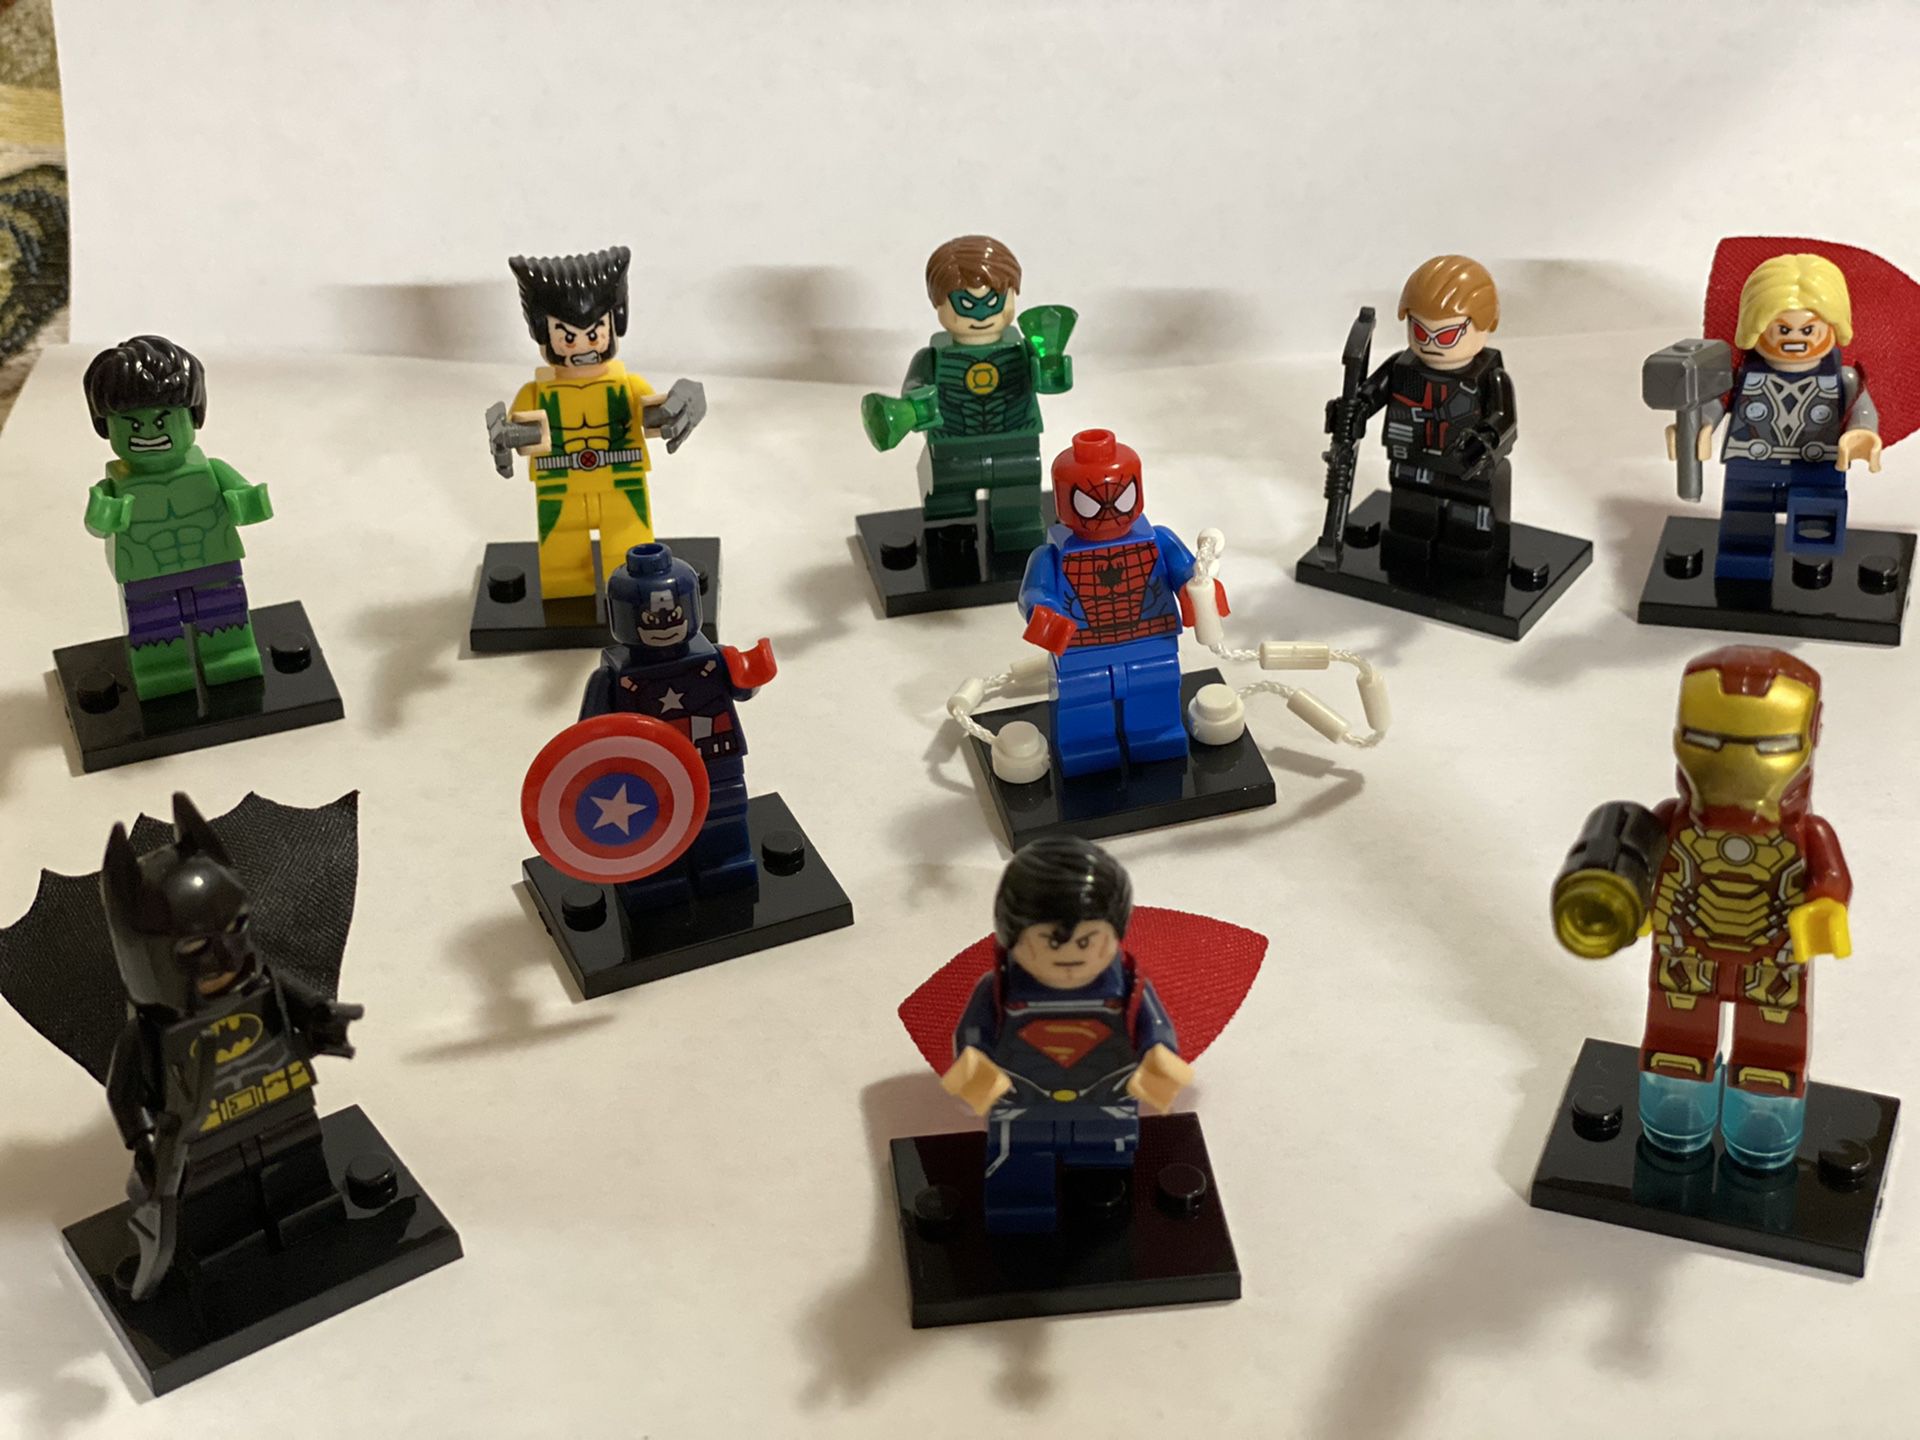 10 mini figures of Marvel’s hero’s